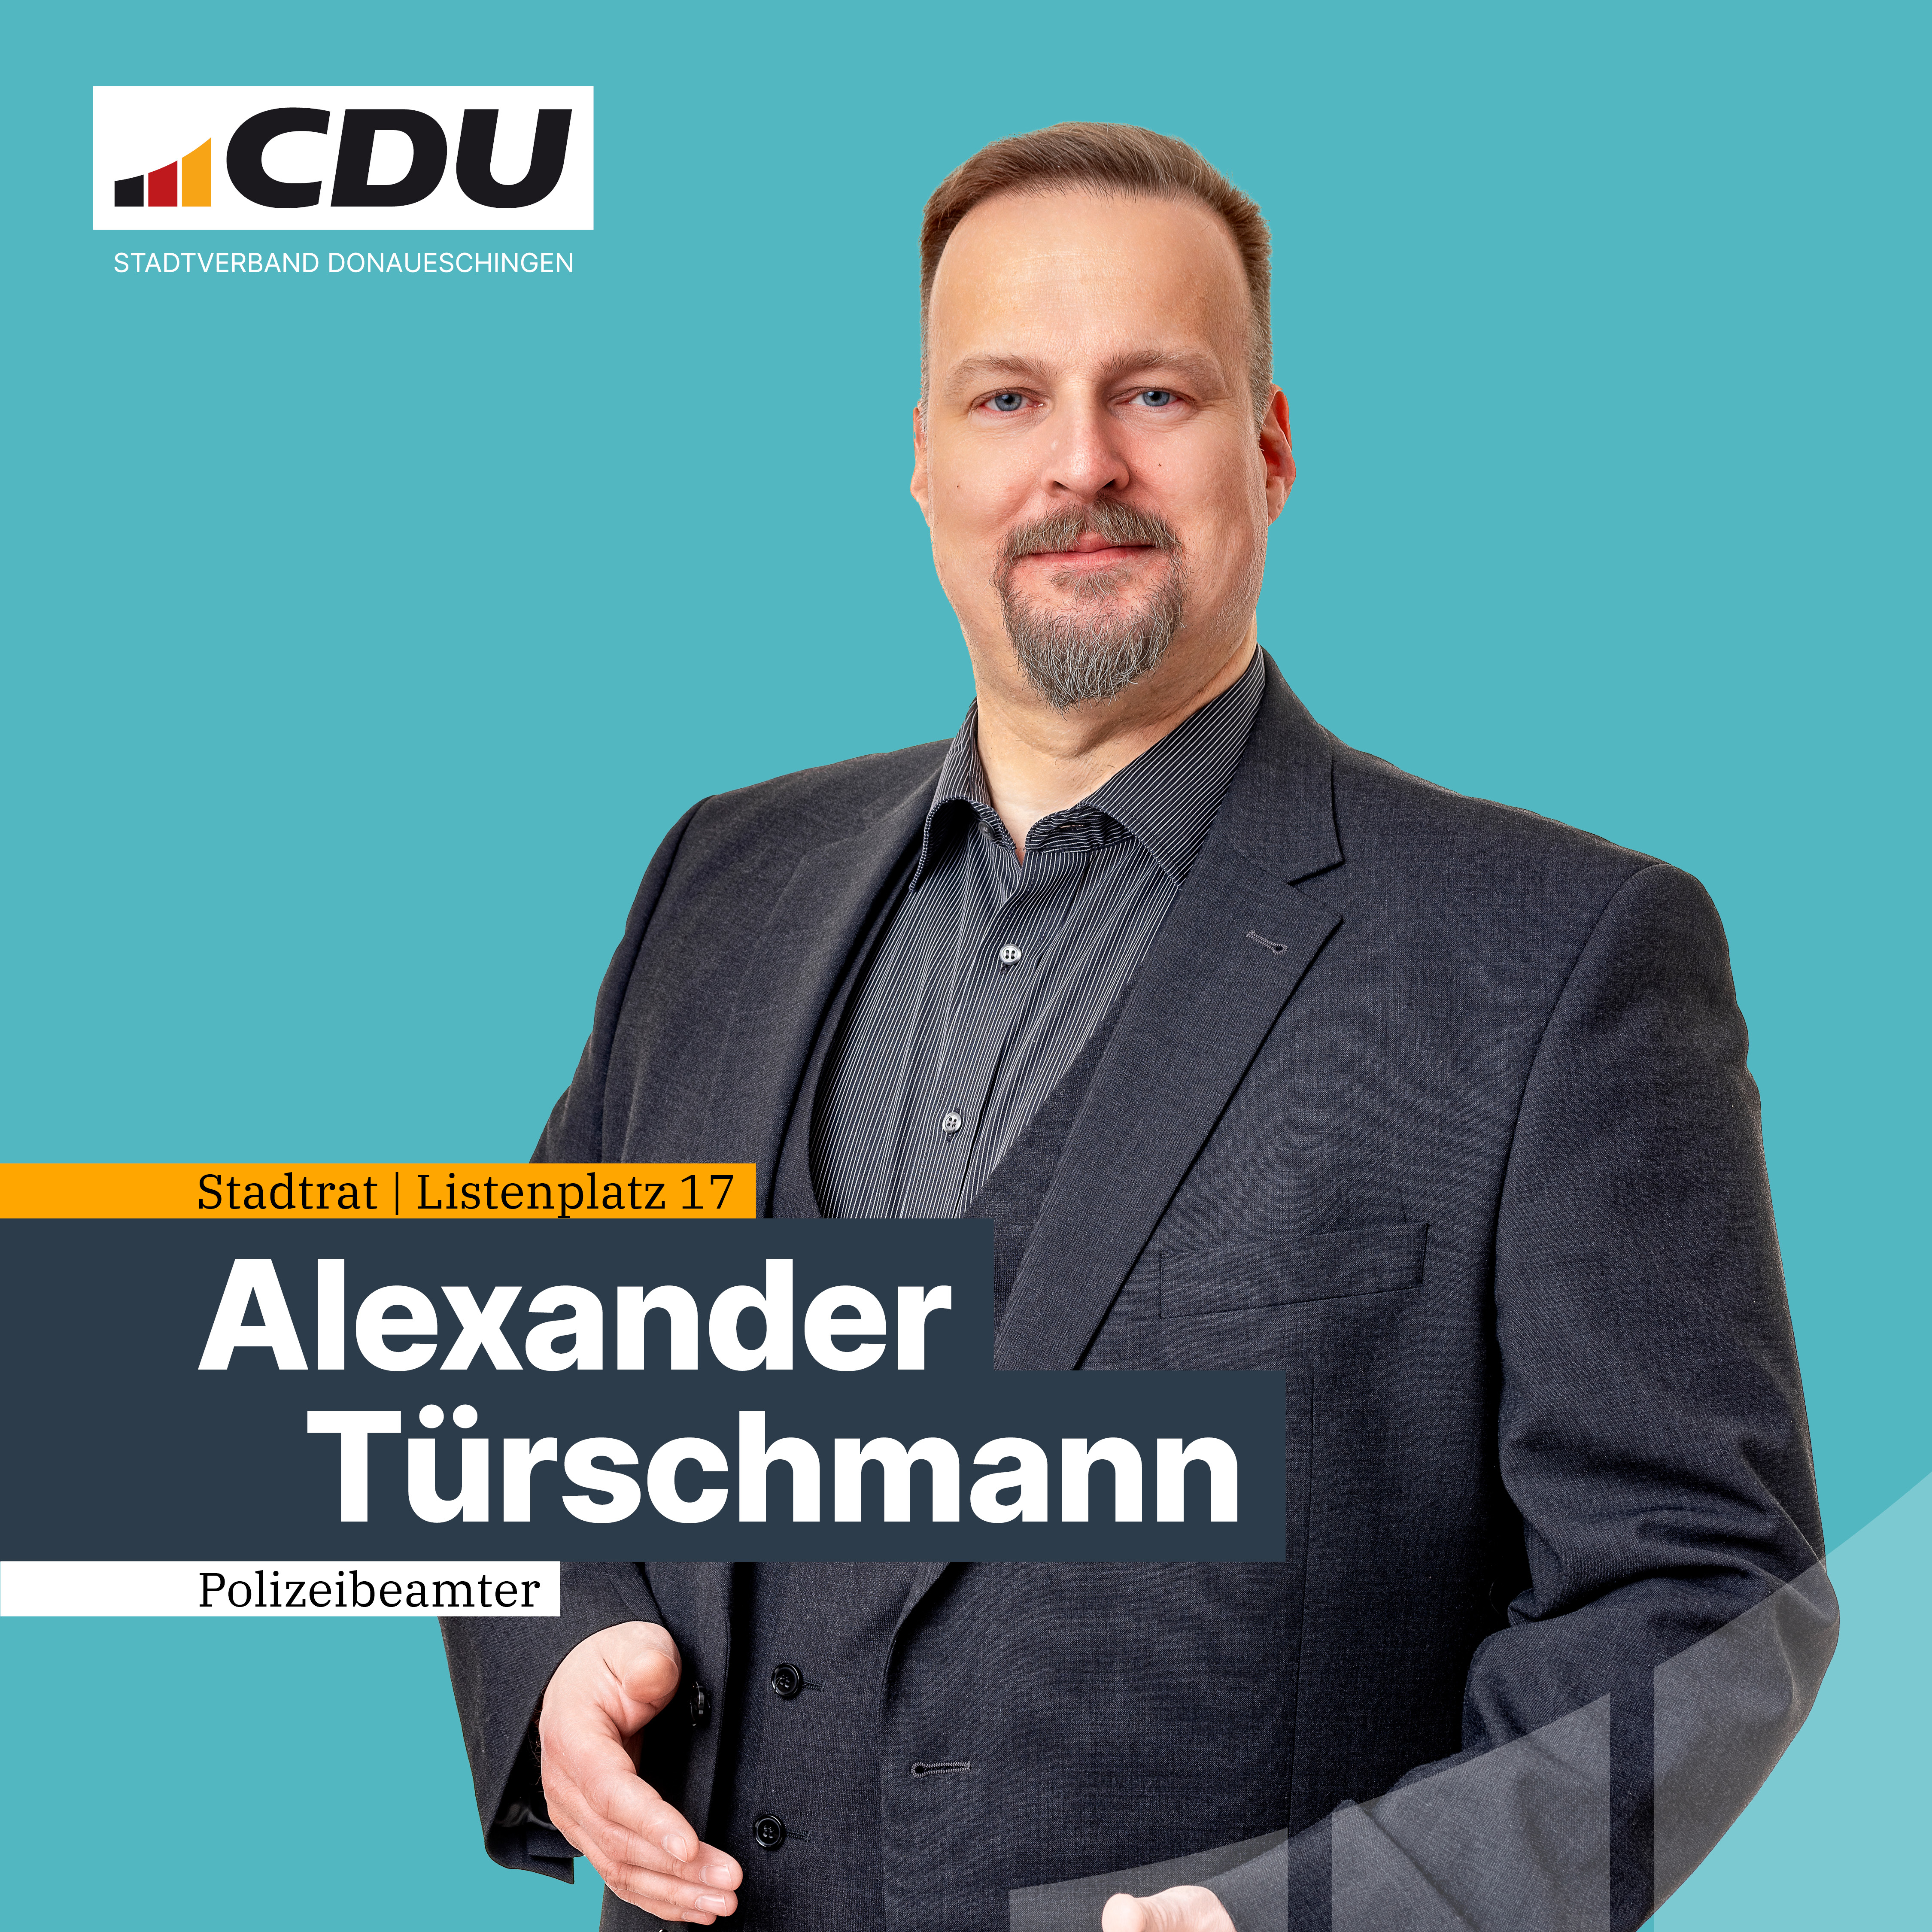  Alexander Trschmann